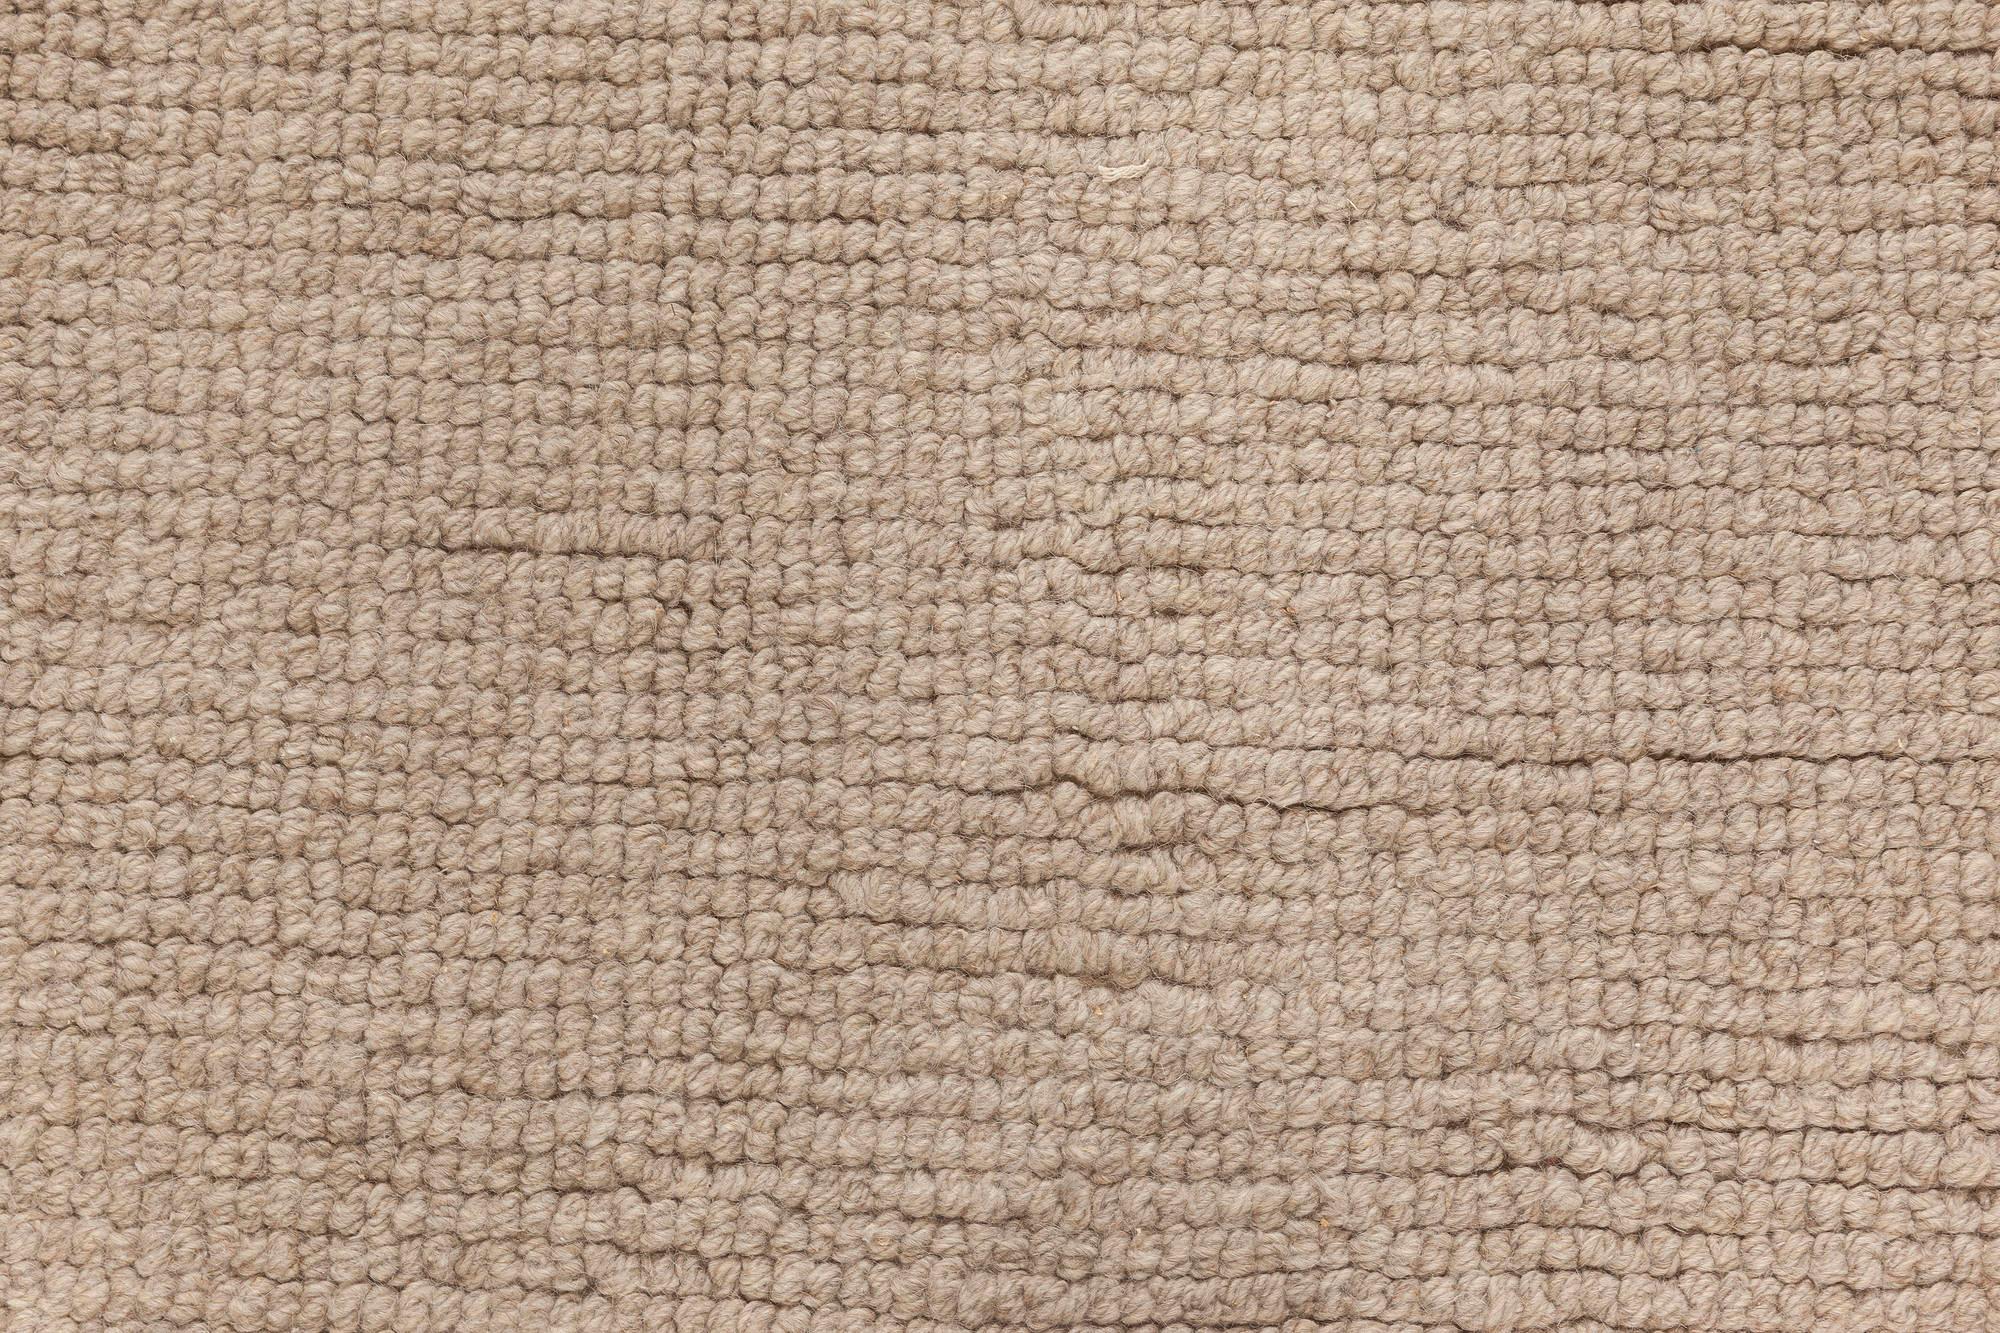 Indian Modern Brown Flat-Weave Wool Rug by Doris Leslie Blau For Sale